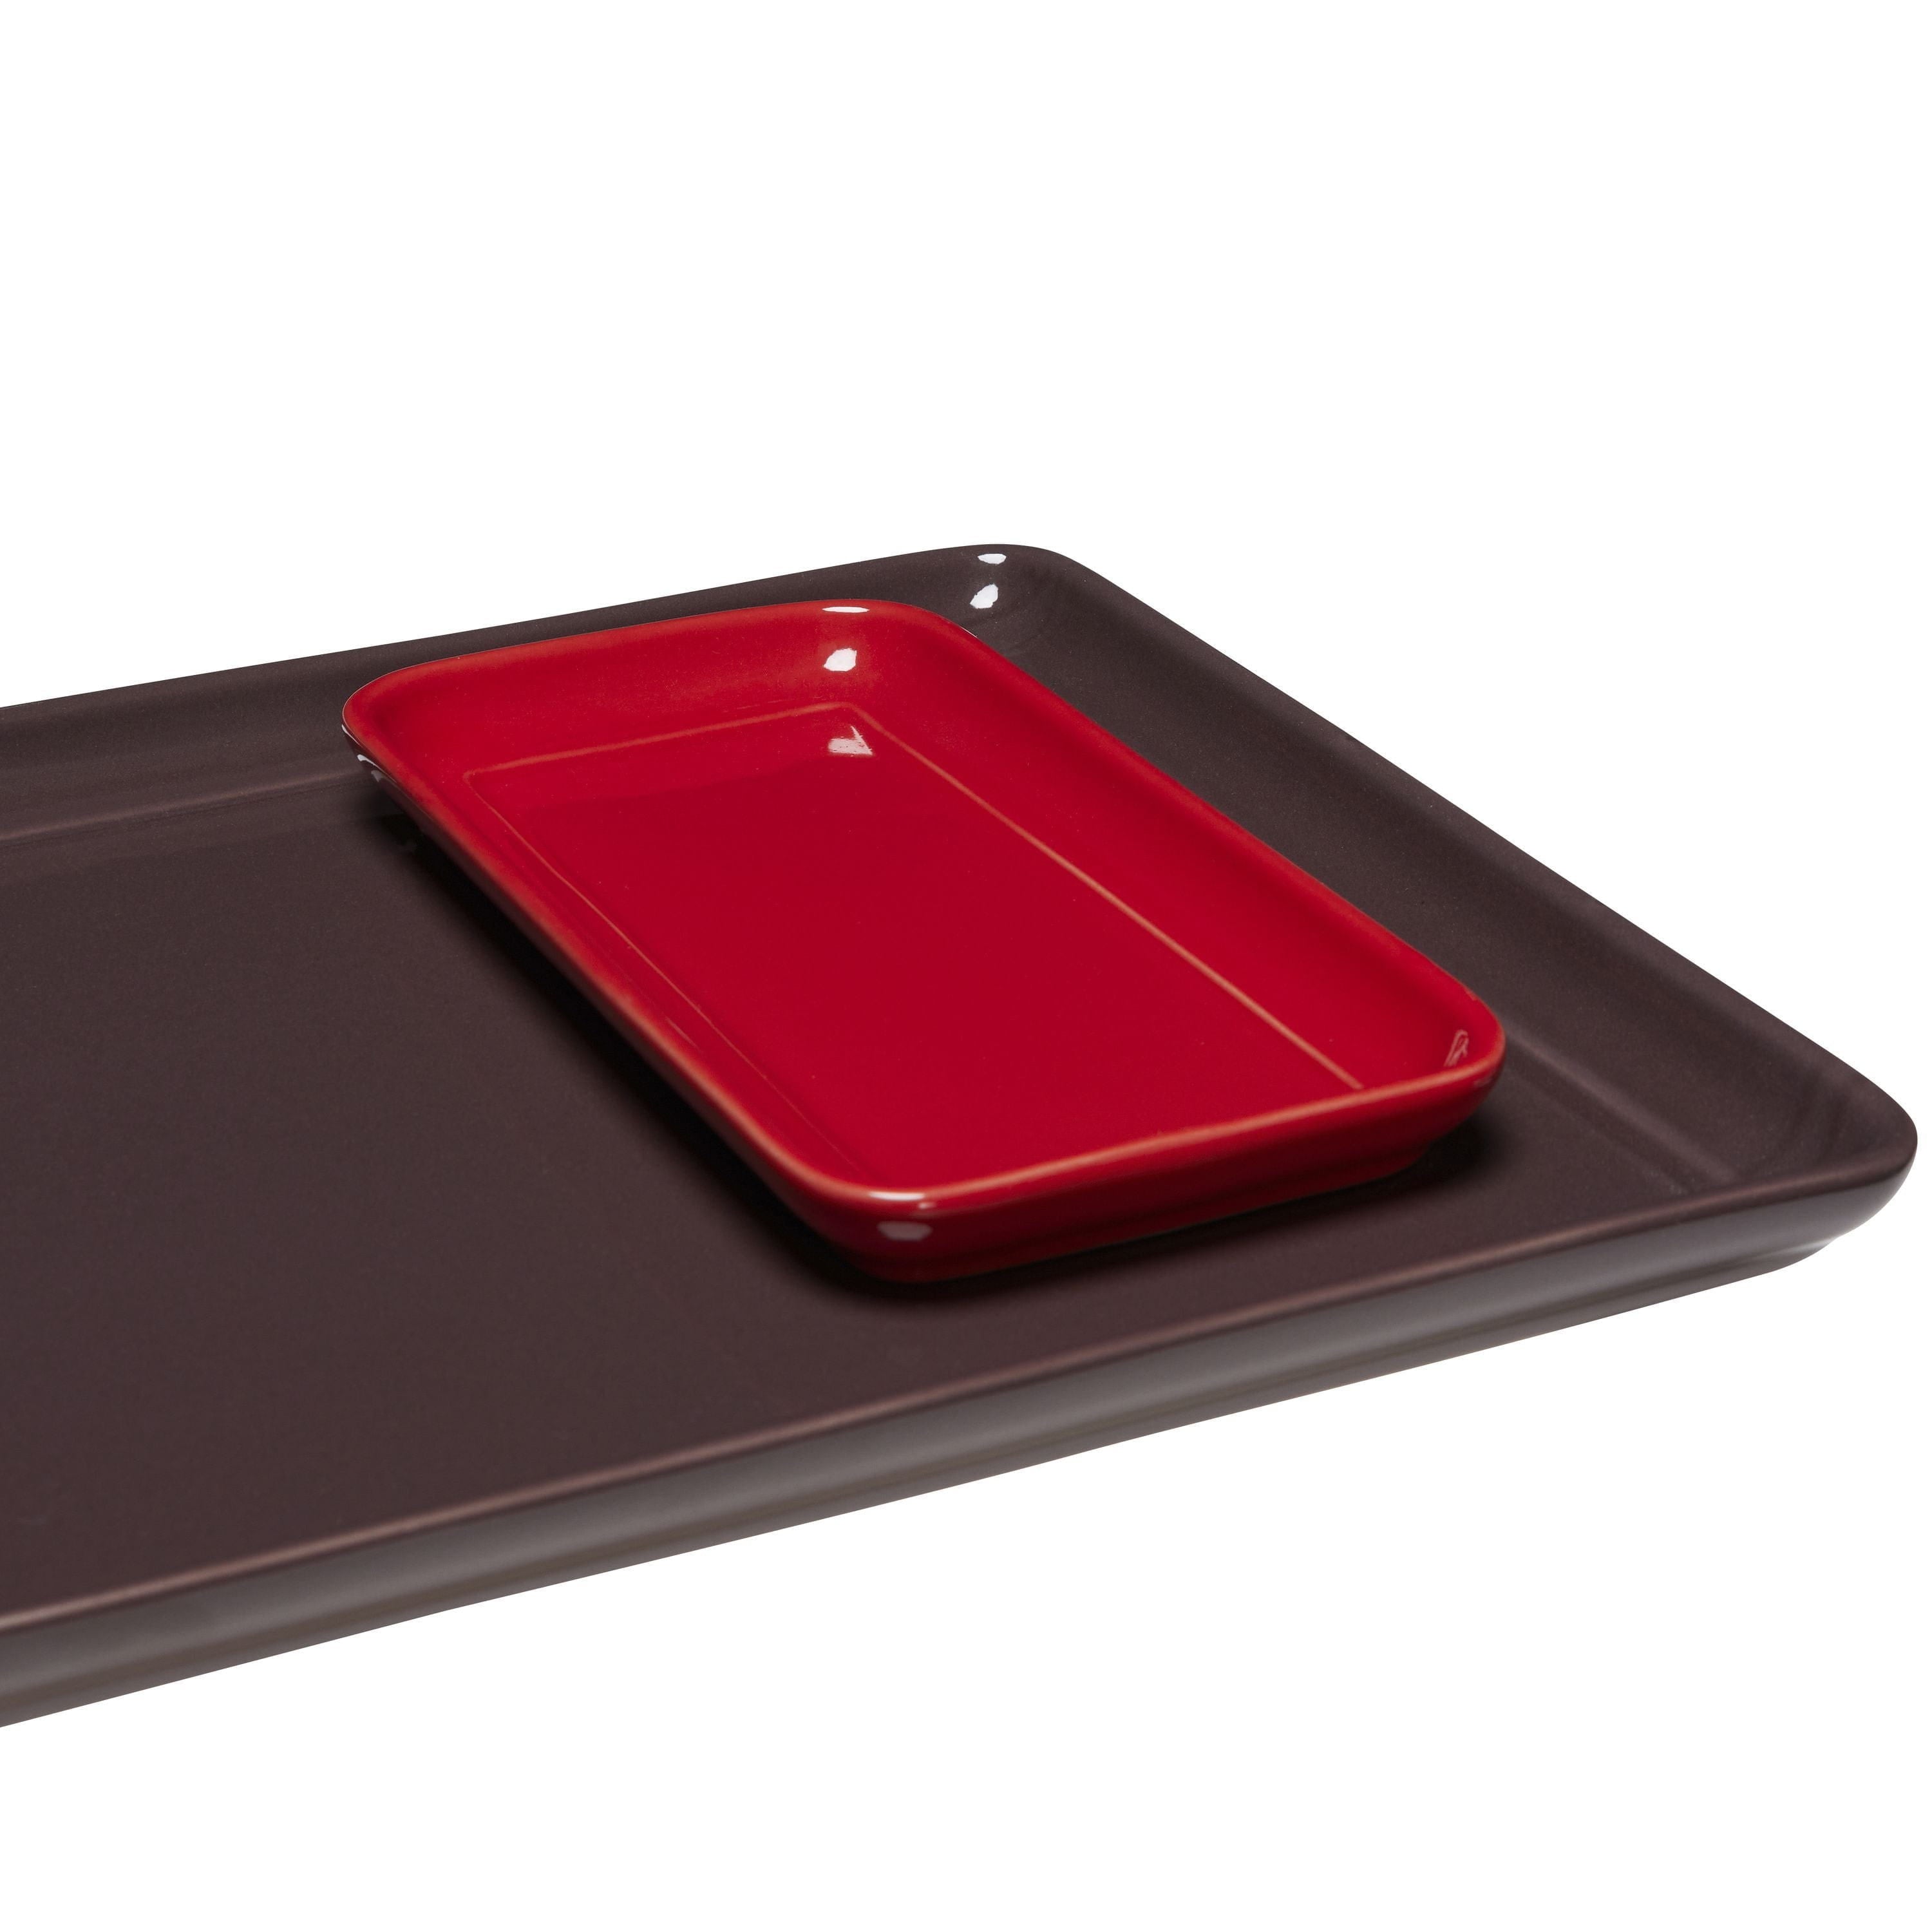 Hübsch Amare Tablett Set Of 2, Burgundy/Red